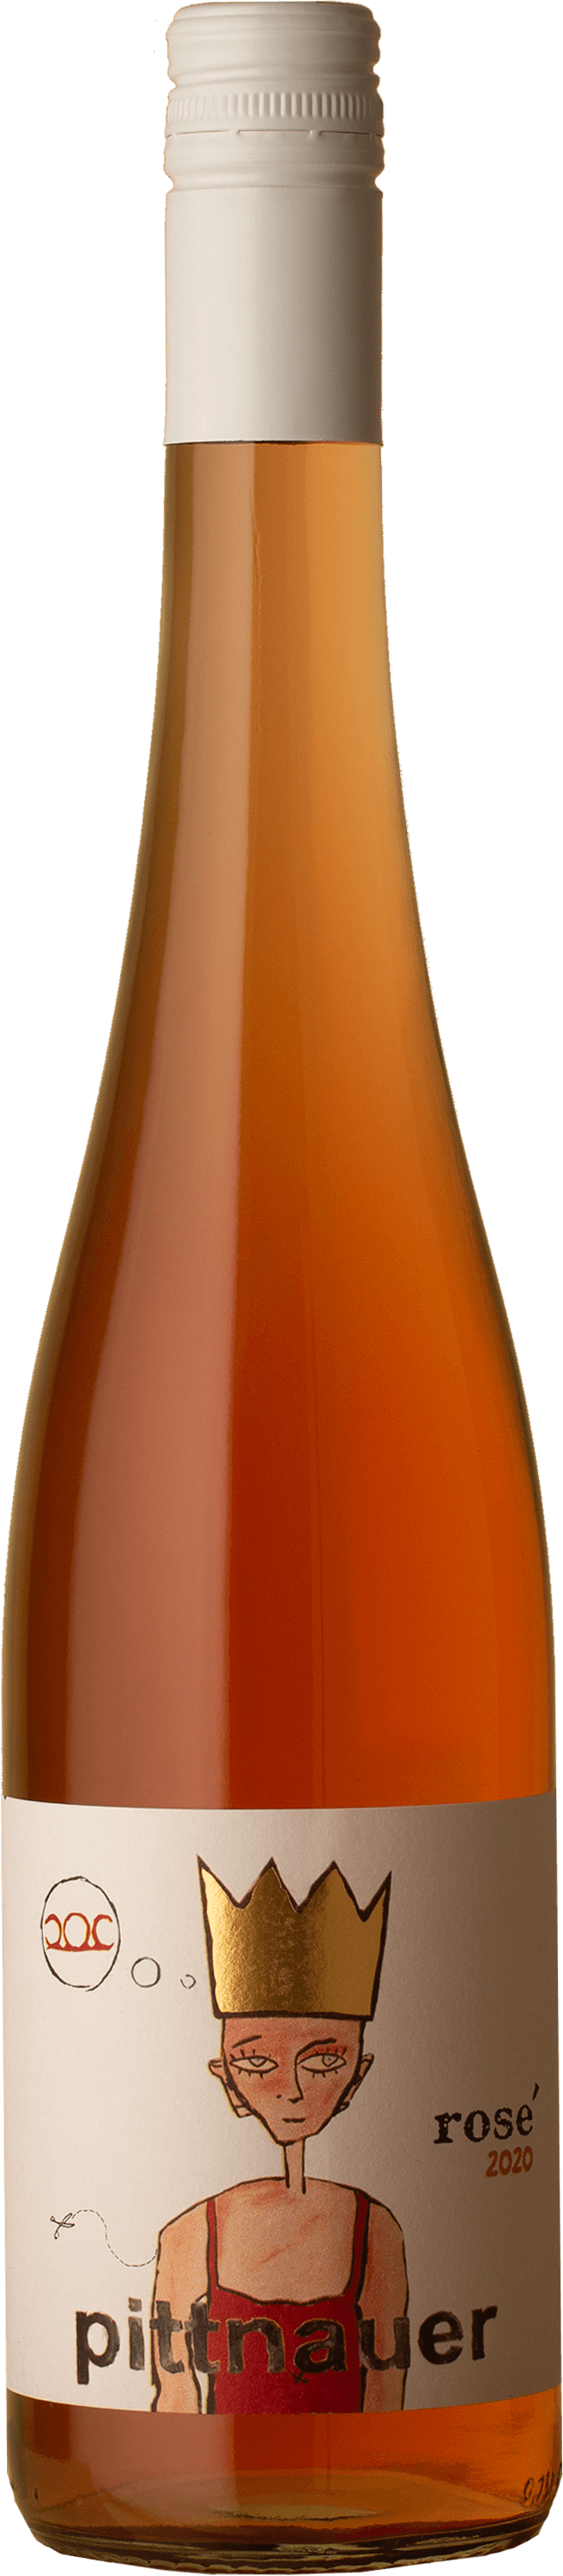 Pittnauer - Rosé 2020 Rosé